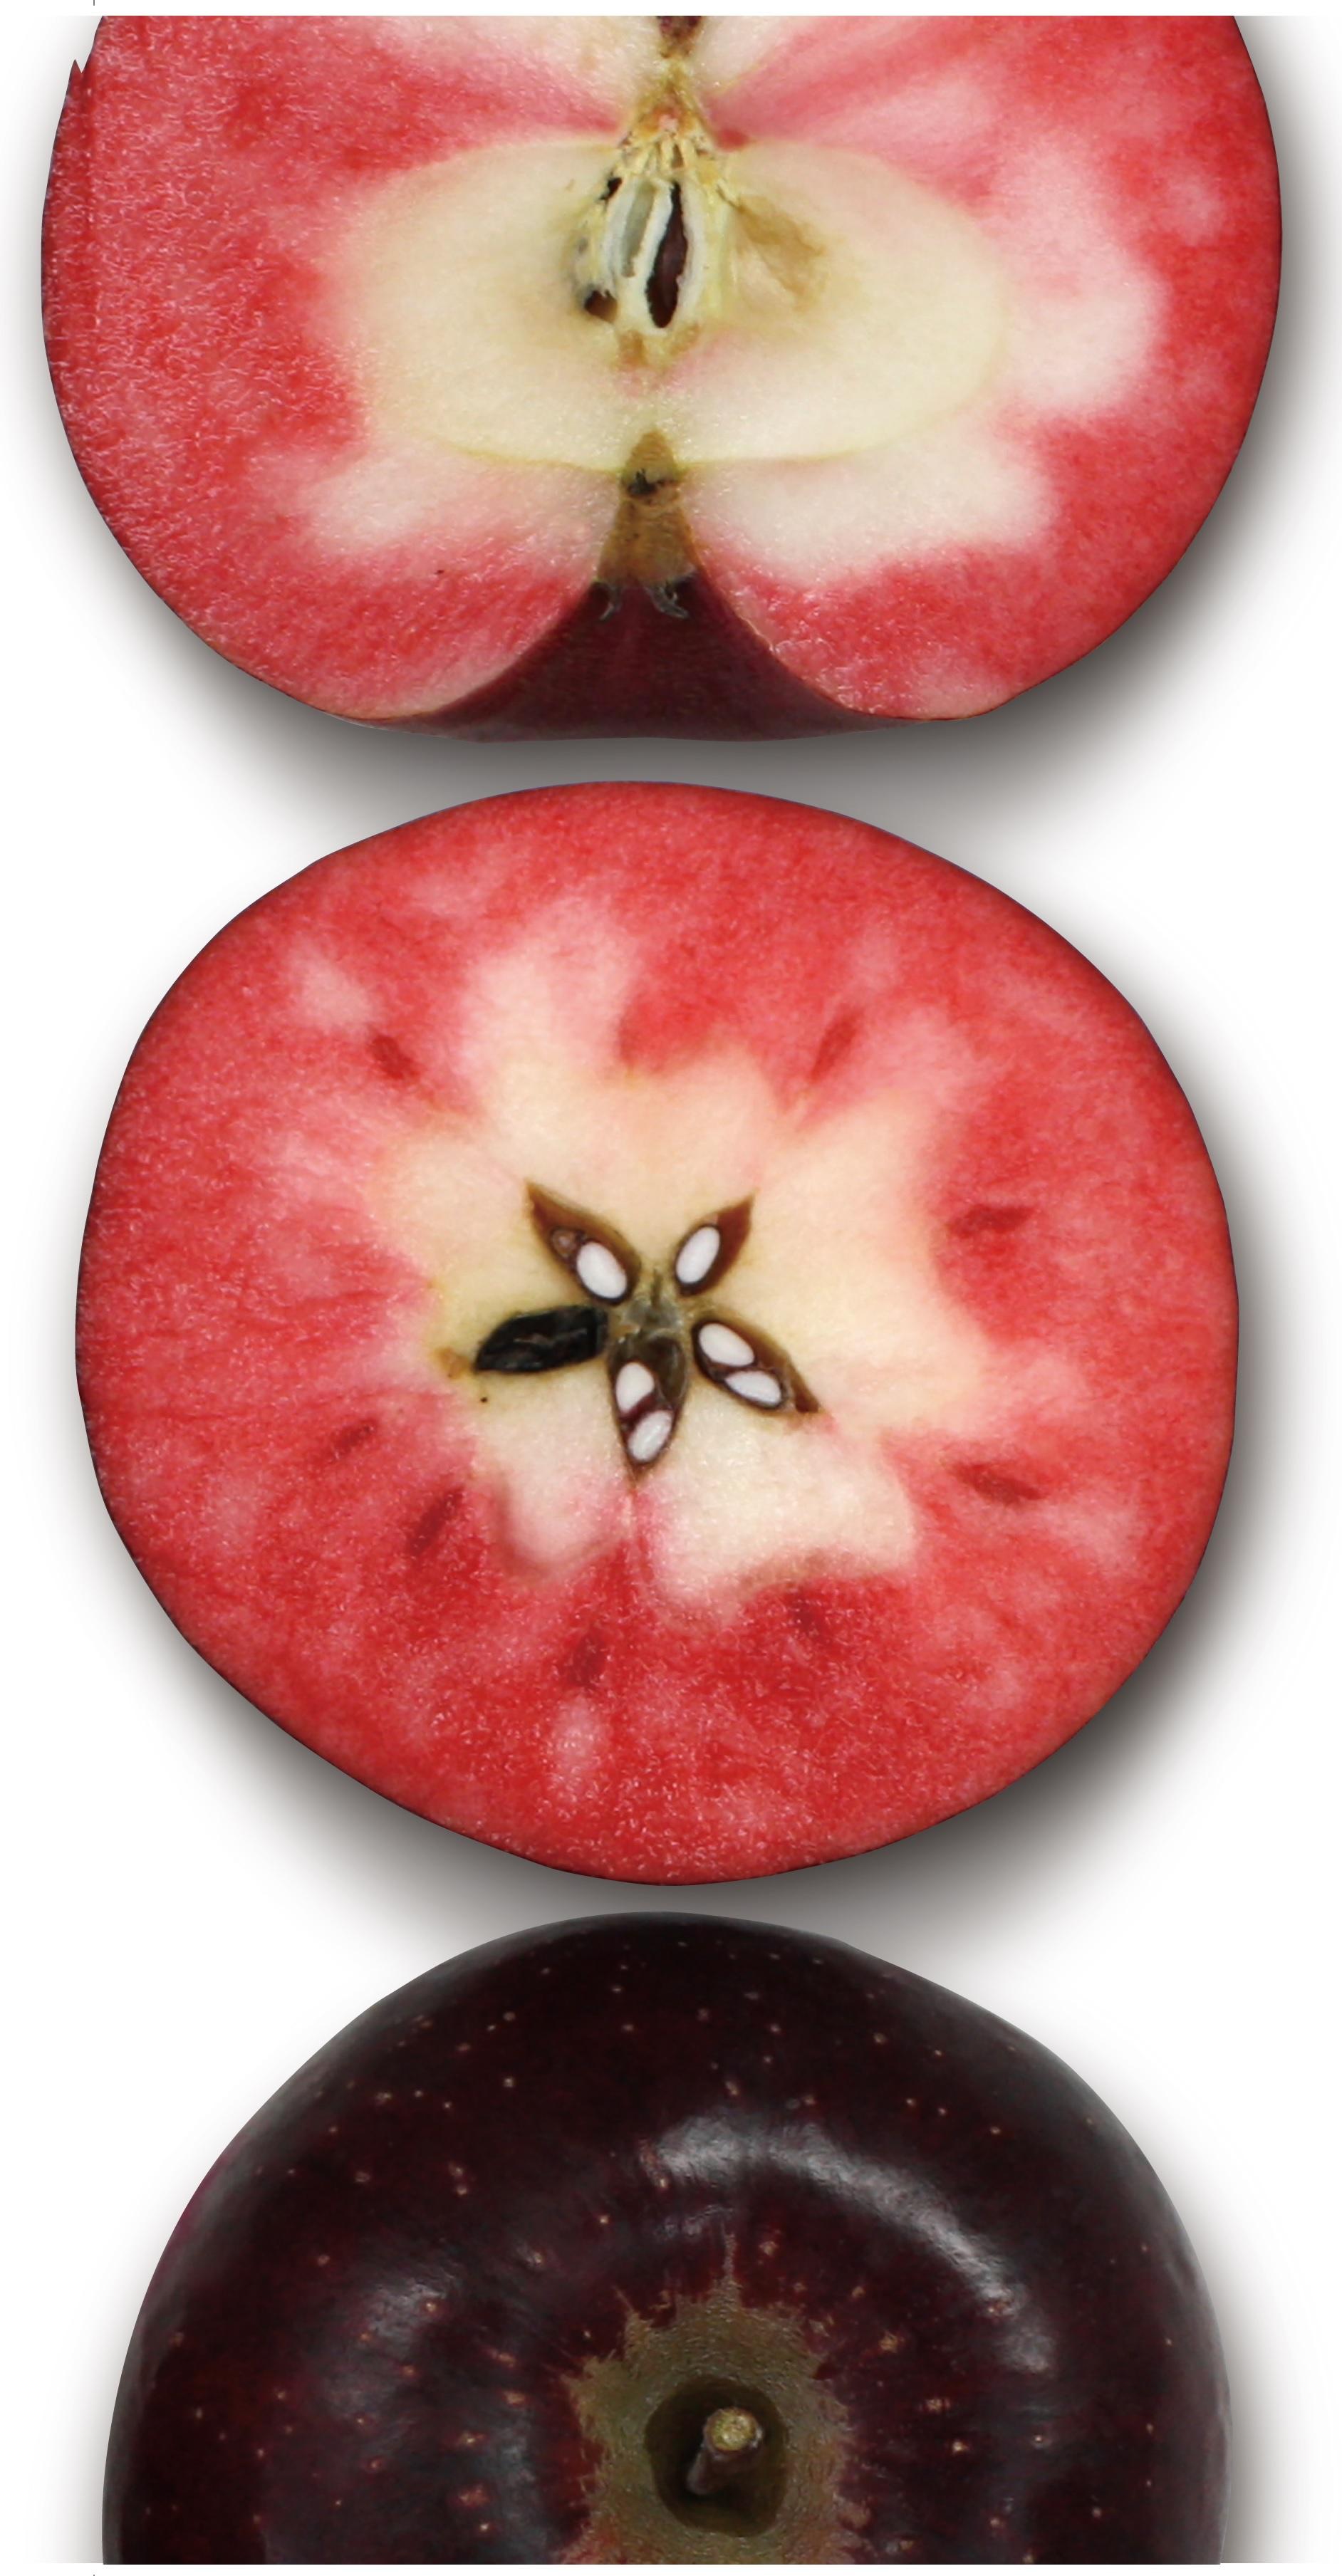 全国区で紹介された スーパー赤果肉リンゴ の魅力と存在感